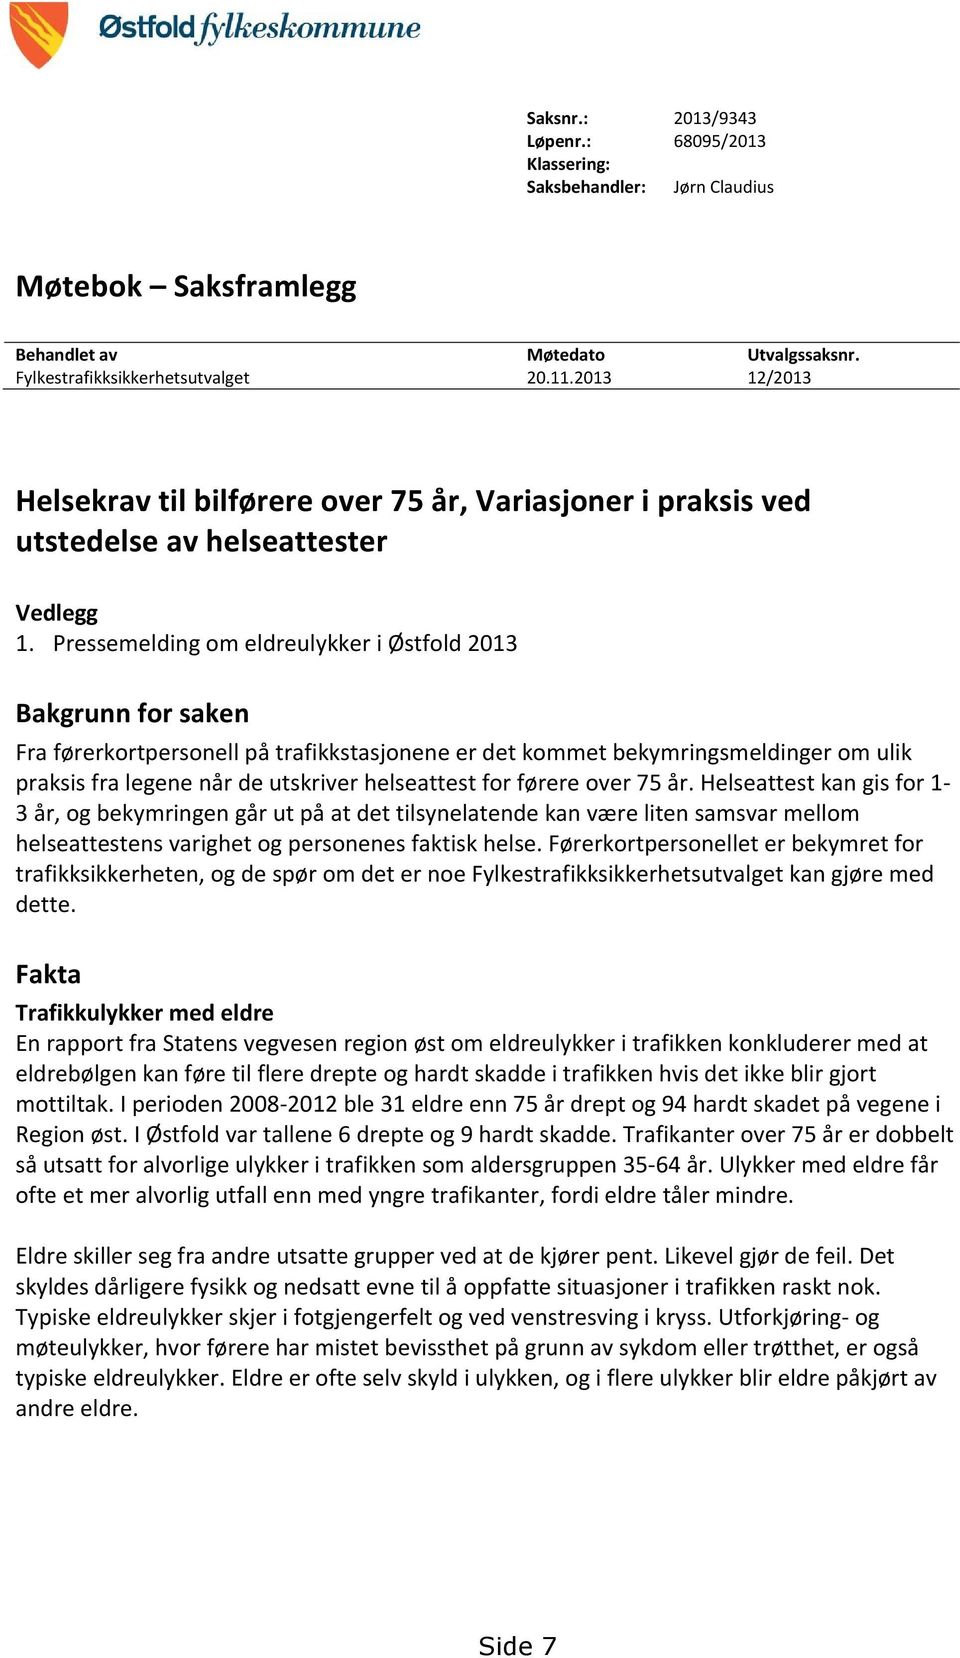 Pressemelding om eldreulykker i Østfold 2013 Bakgrunn for saken Fra førerkortpersonell på trafikkstasjonene er det kommet bekymringsmeldinger om ulik praksis fra legene når de utskriver helseattest